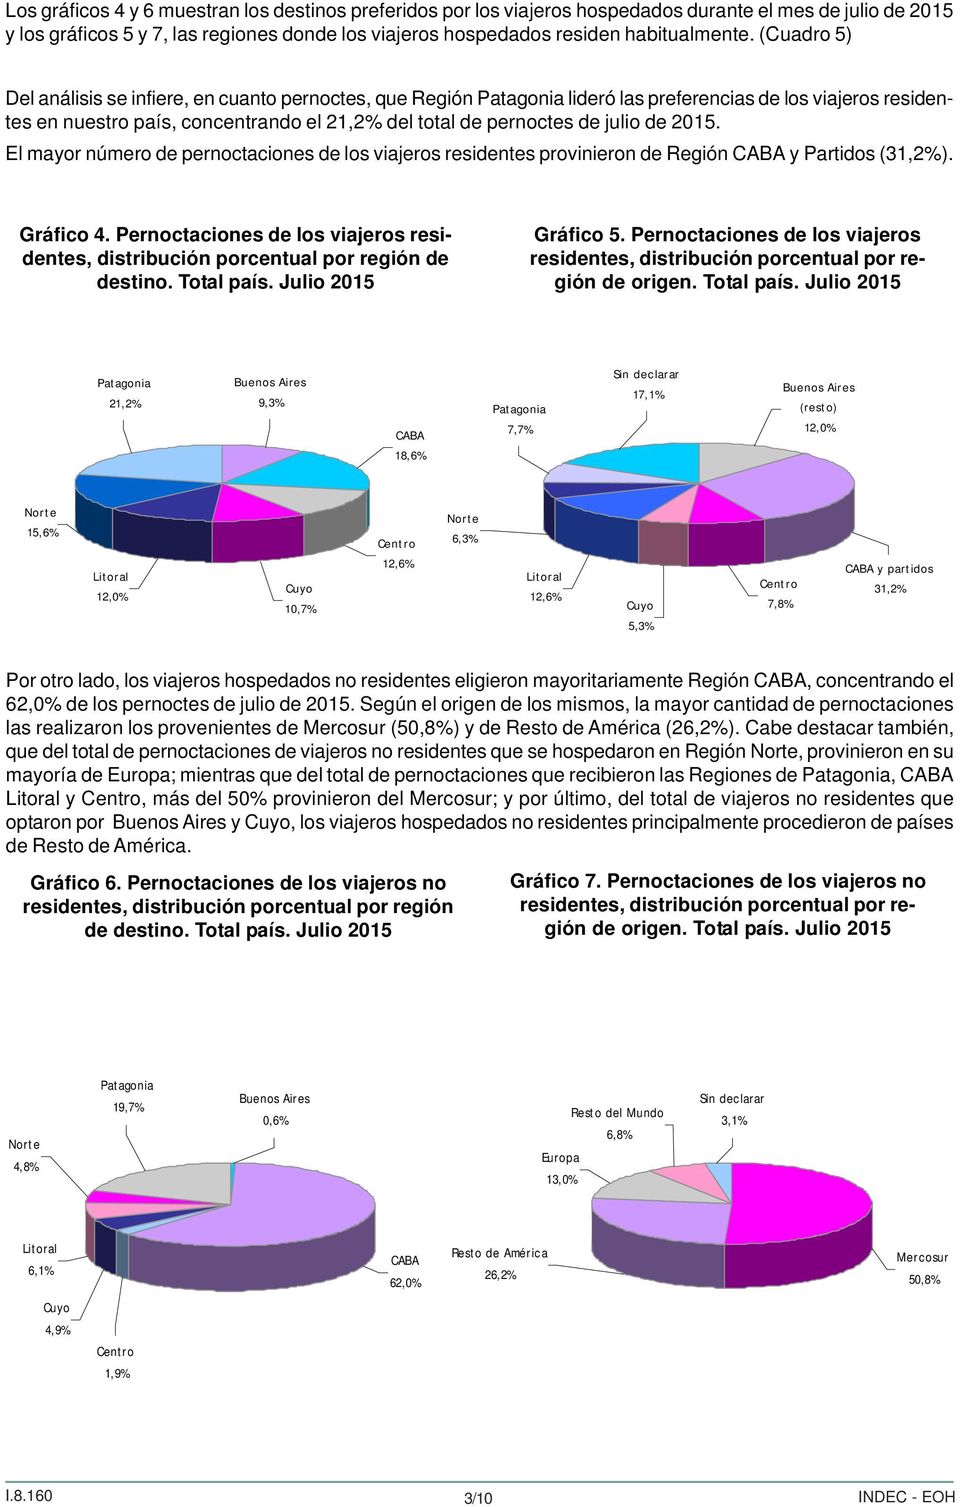 2015. El mayor número de pernoctaciones de los viajeros residentes provinieron de CABA y Partidos (31,2%). Gráfico 4.